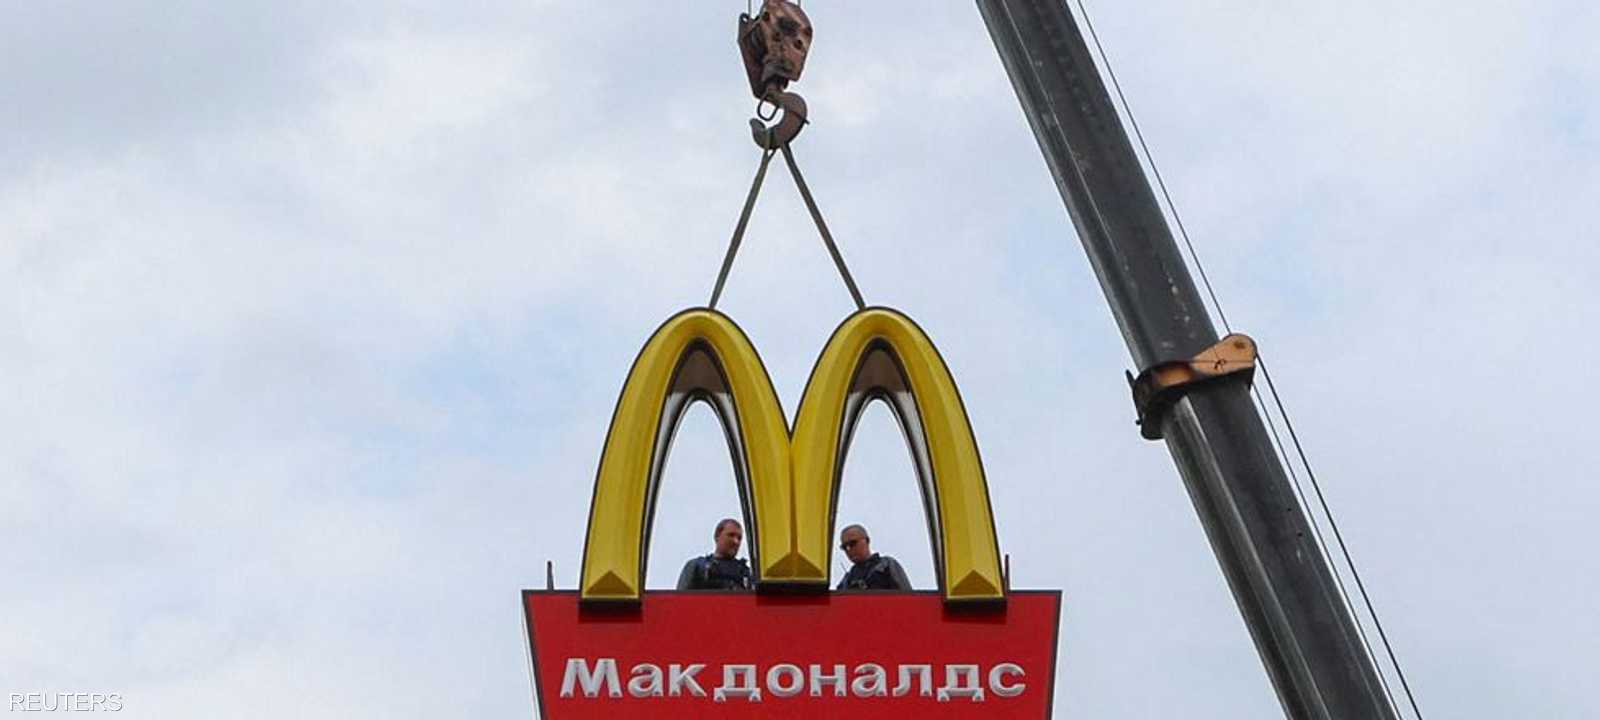 رغم خروج "ماكدونالدز" .. الروس ما زالوا يستمتعون بـ"بيج ماك"